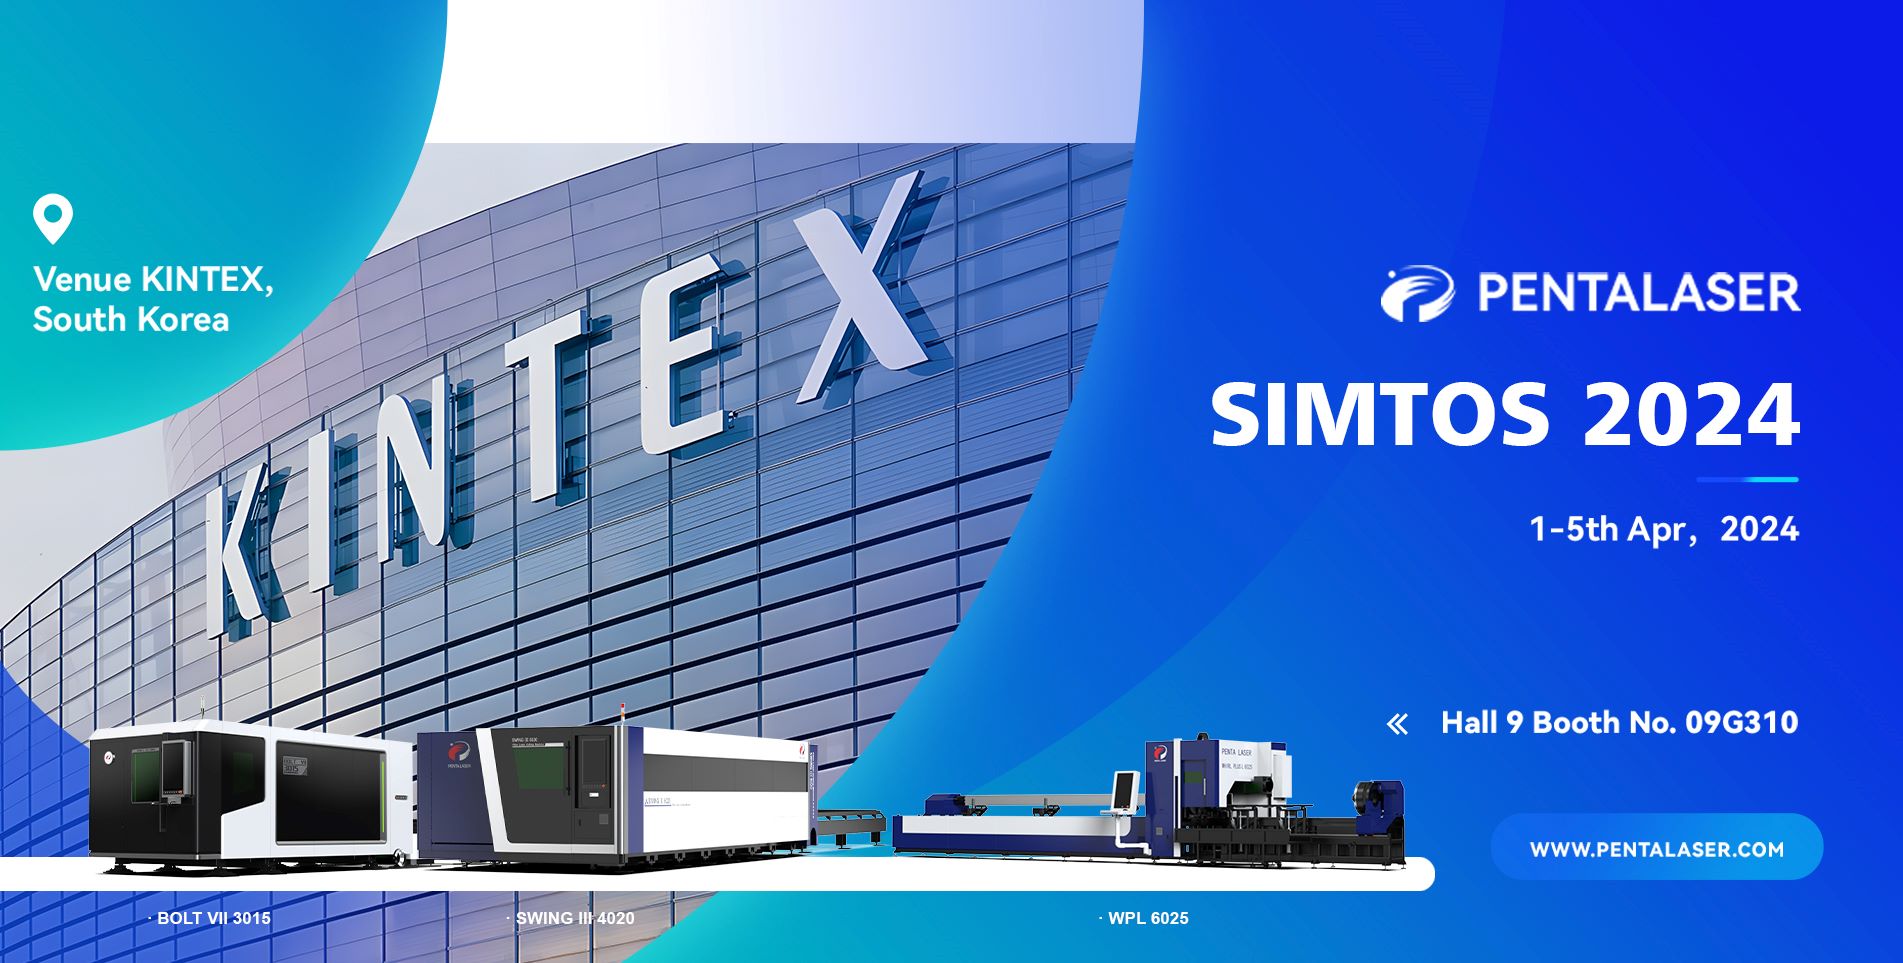 ペンタレーザーがSIMOTS 2024韓国製造展示会でデビューし、レーザー切断技術の新たな進歩を実証